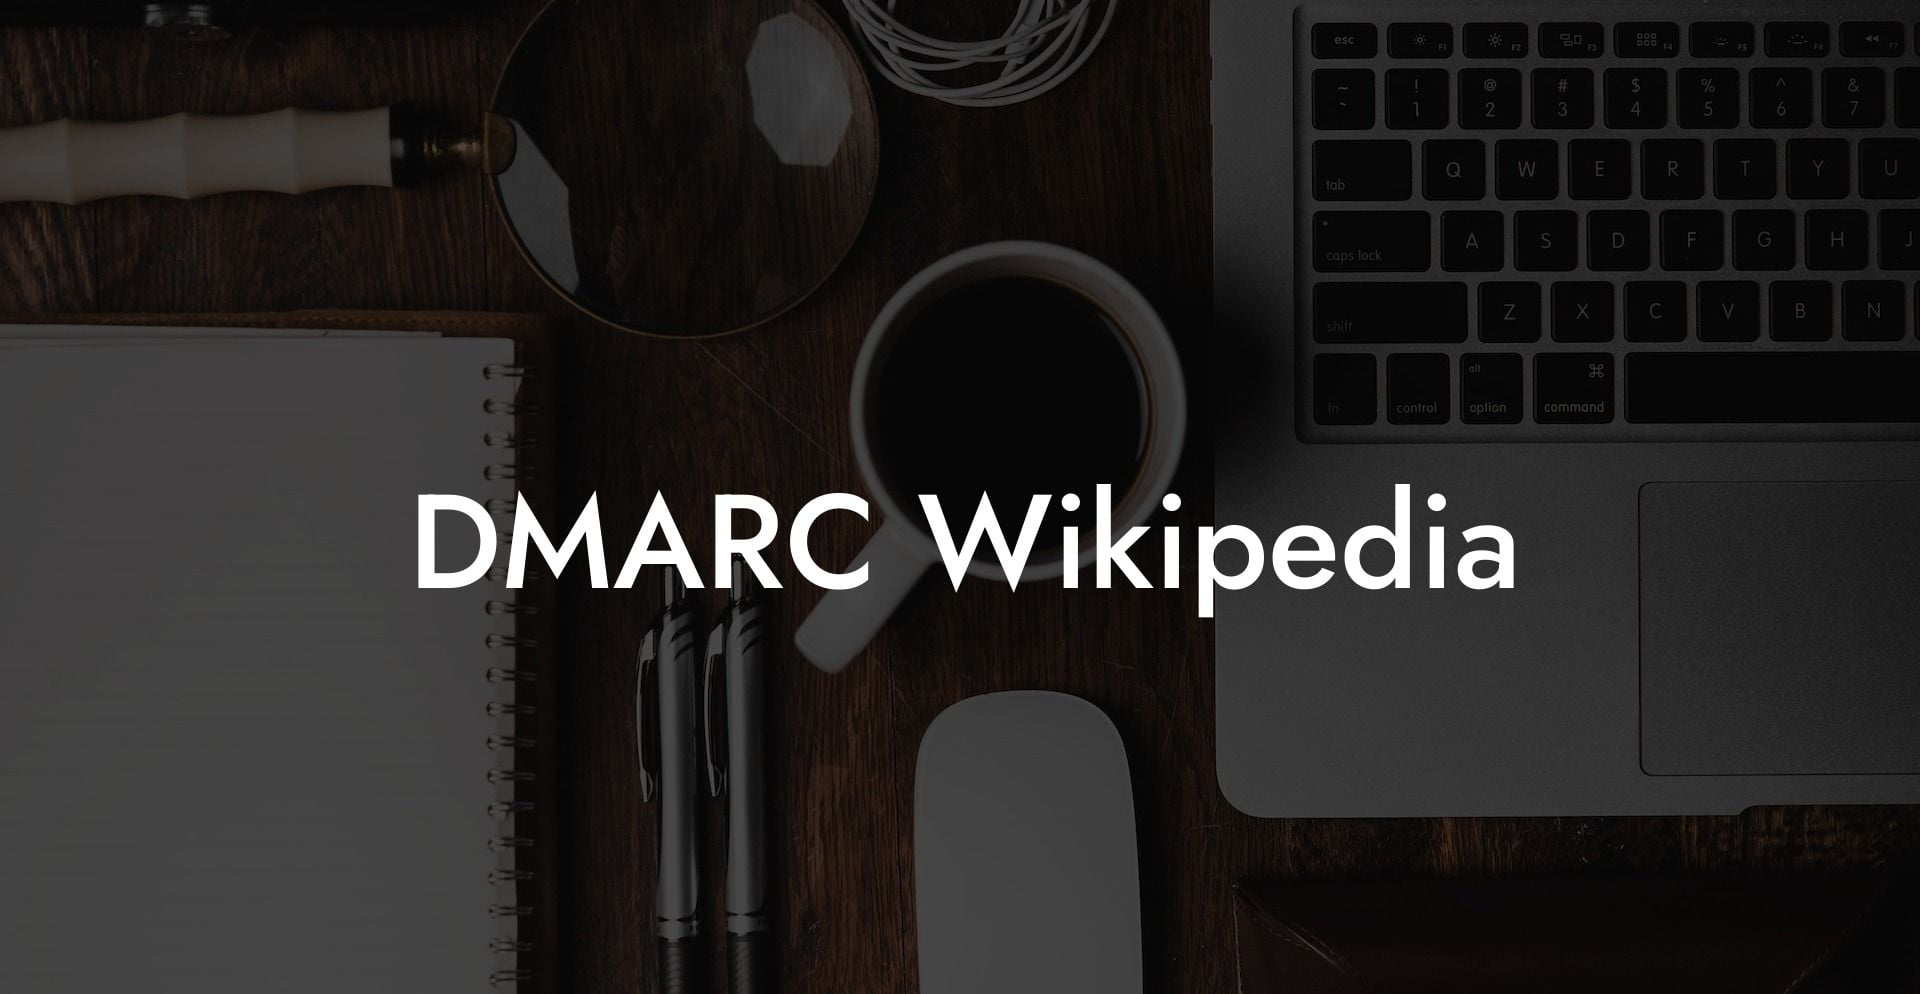 DMARC Wikipedia